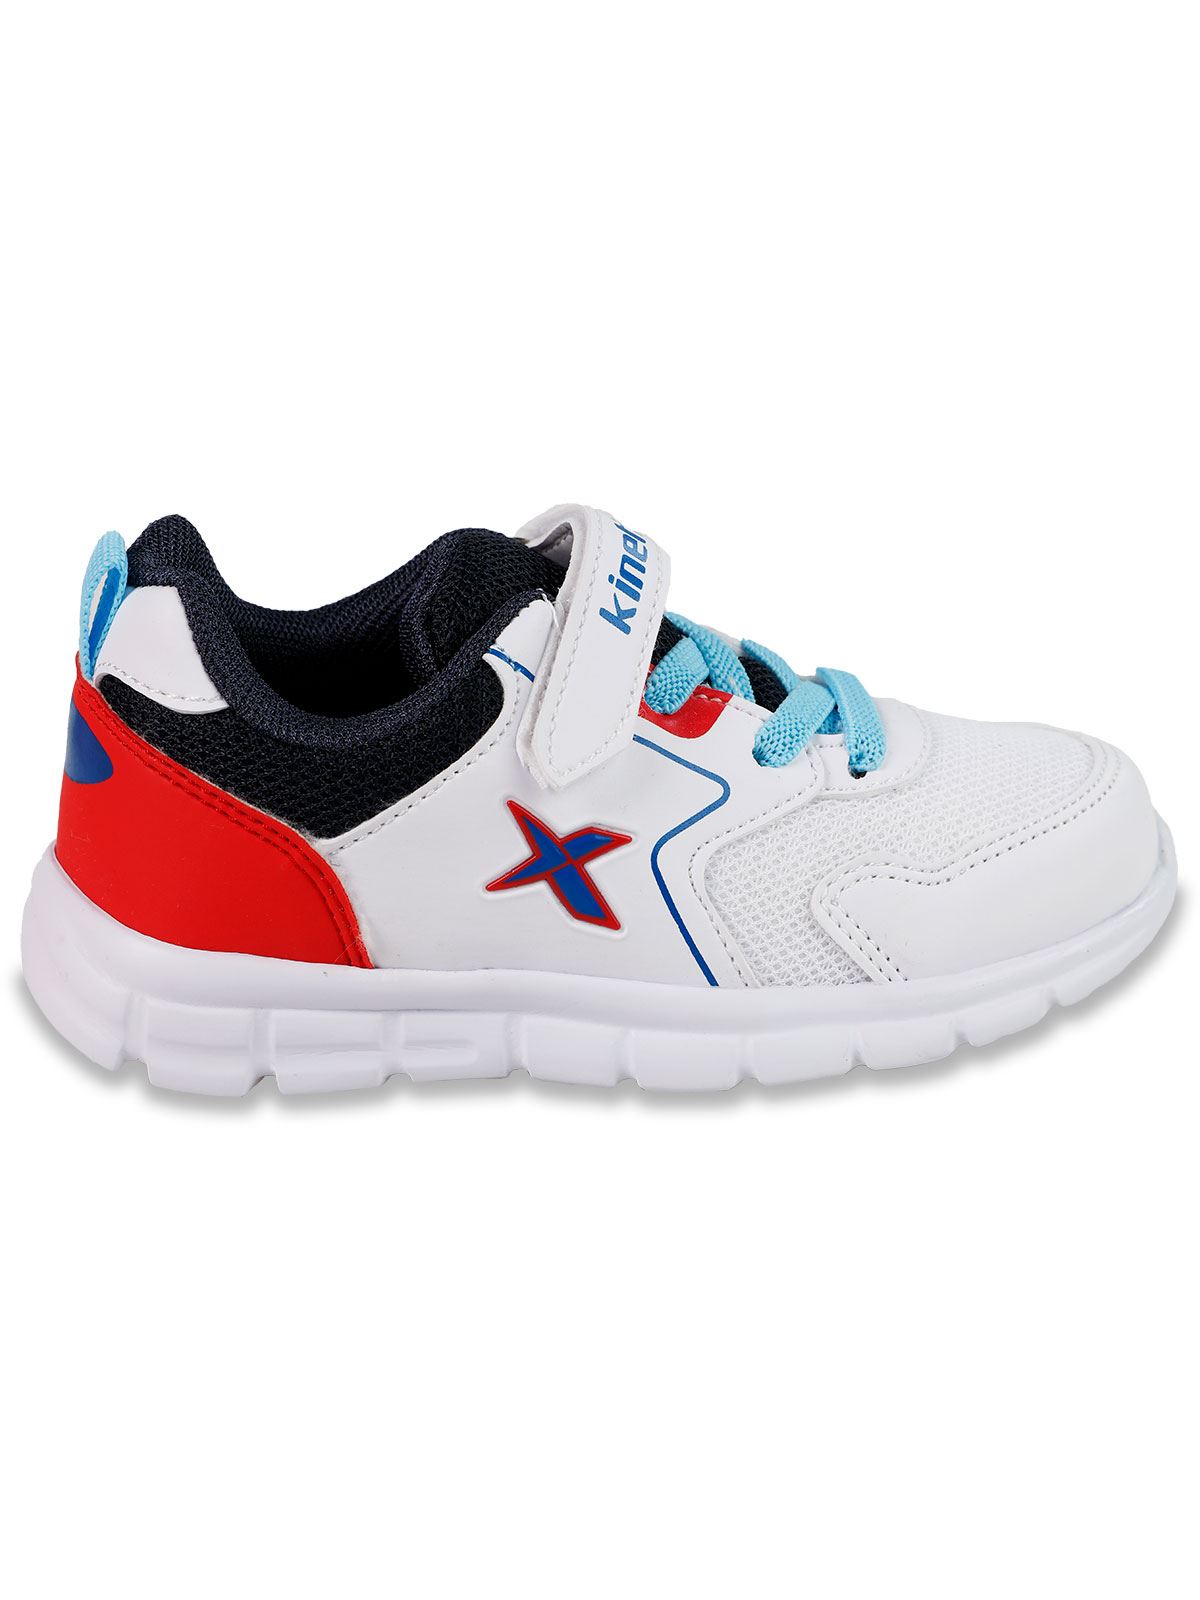 Kinetix Erkek Çocuk Spor Ayakkabı 26-30 Numara Beyaz